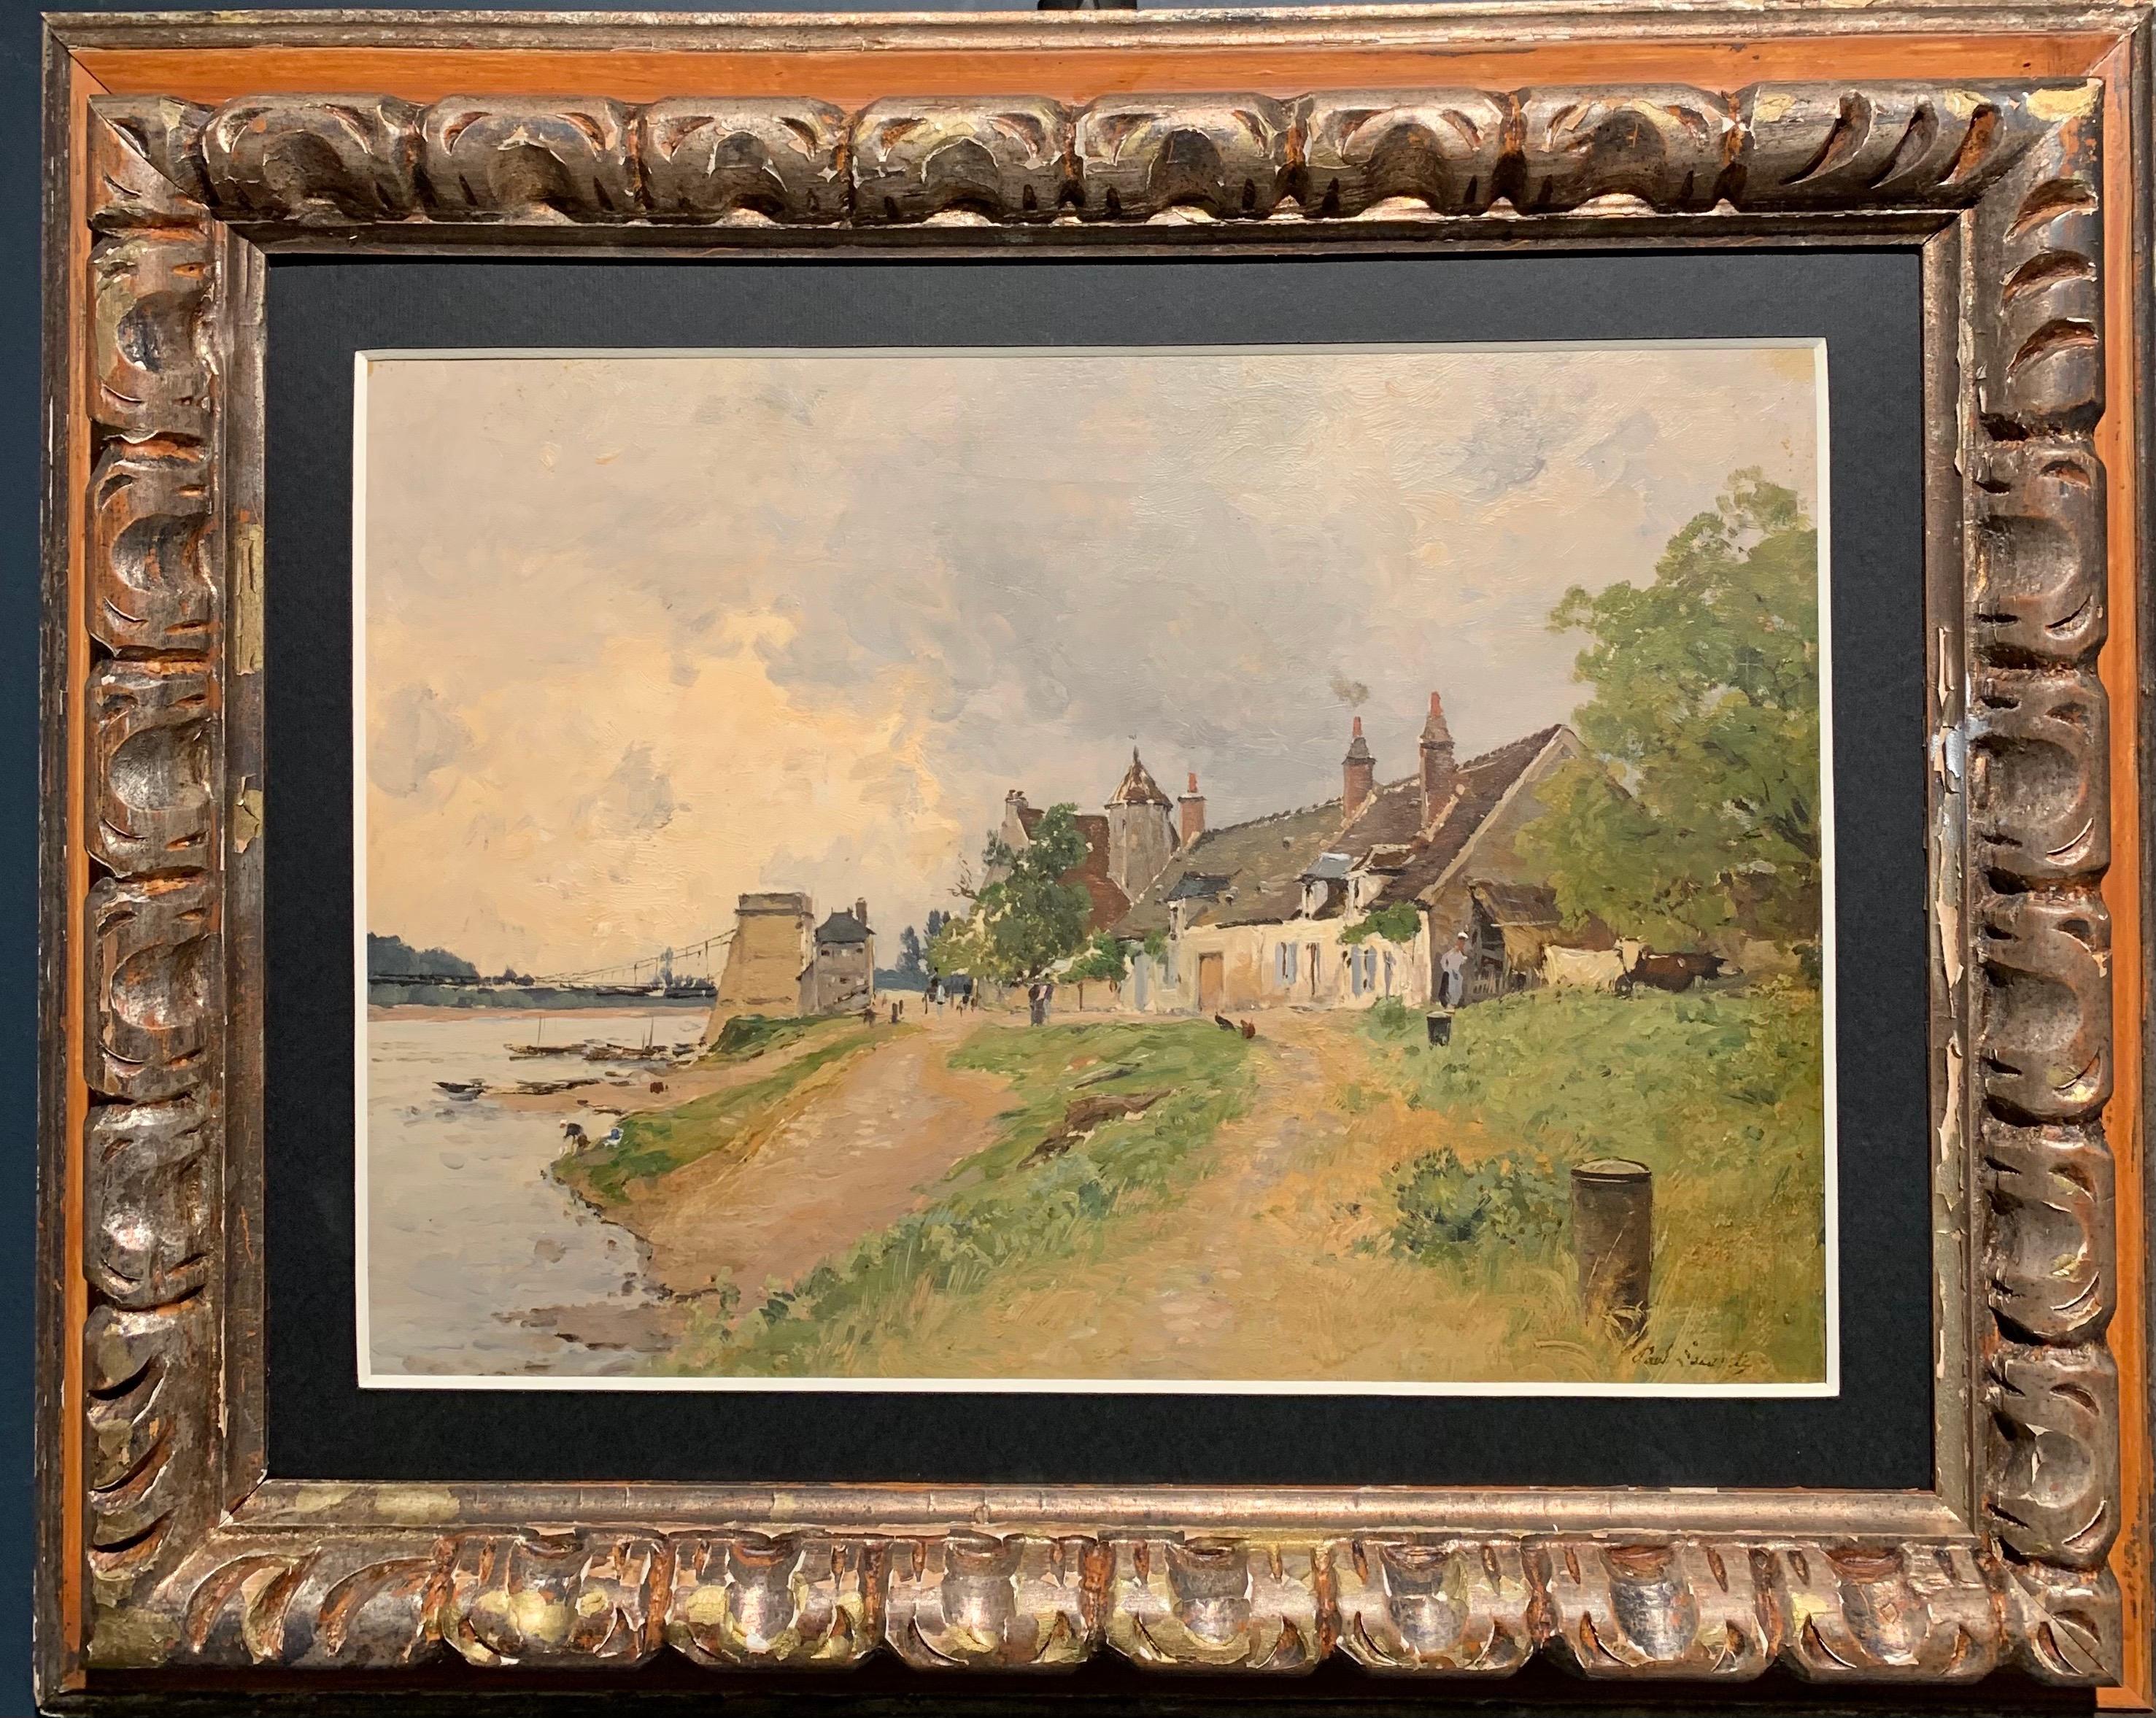 Paul Lecomte Landscape Painting - "Village au bord de riviere" , France, Oil 36 x 26 cm circa 1880 Free shipping